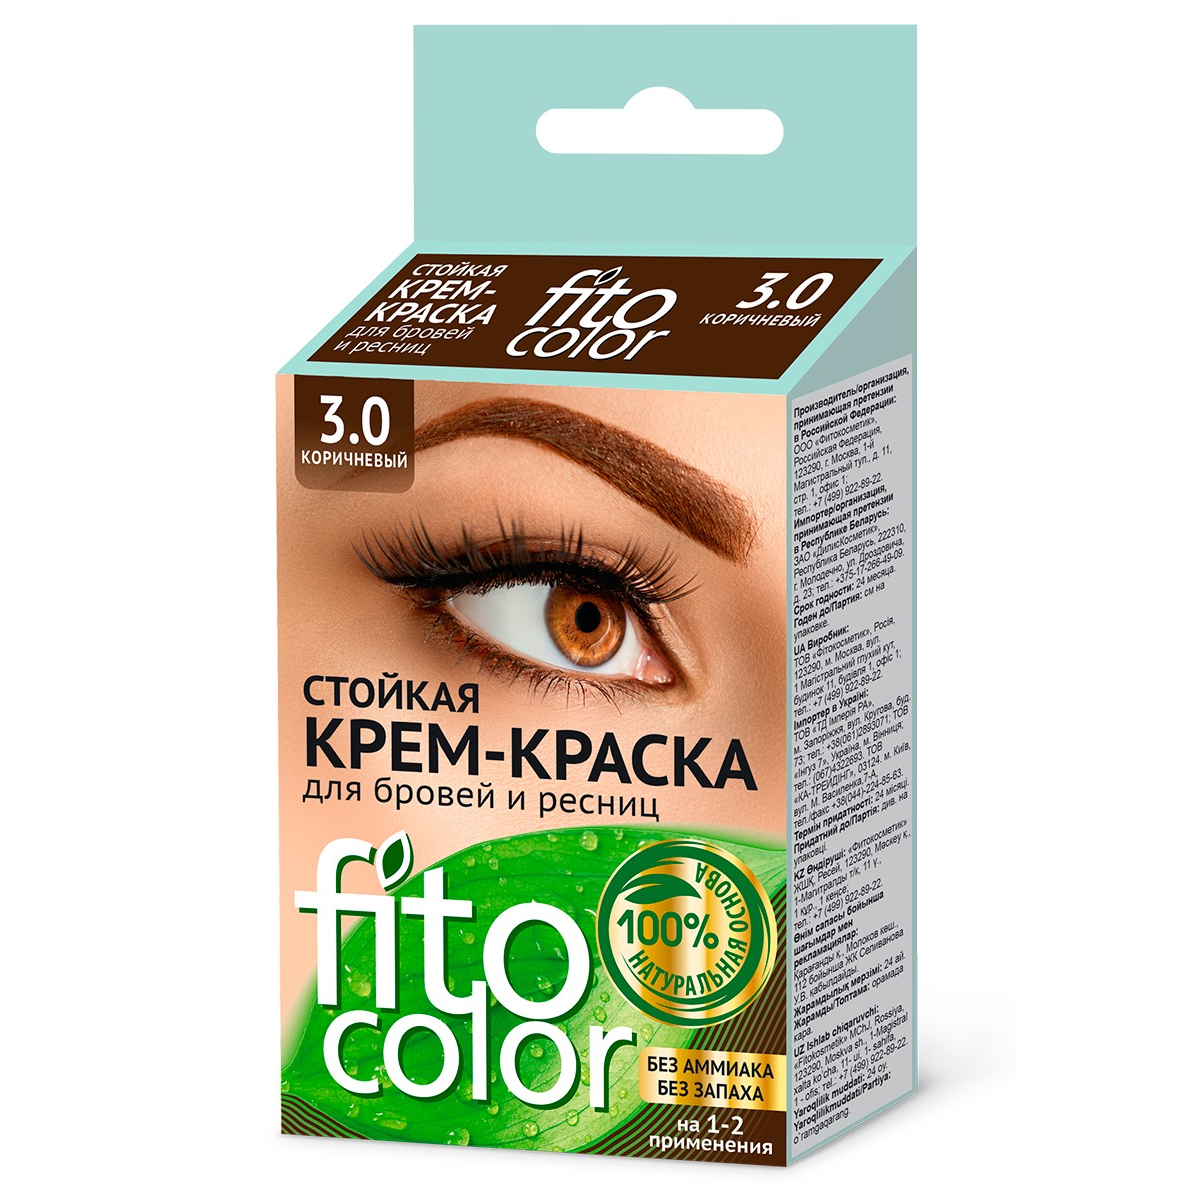 Крем-краска для бровей и ресниц Fitocolor коричневый 2х2мл конопляное масло для роста ресниц и бровей с усьмой hemp oil usma